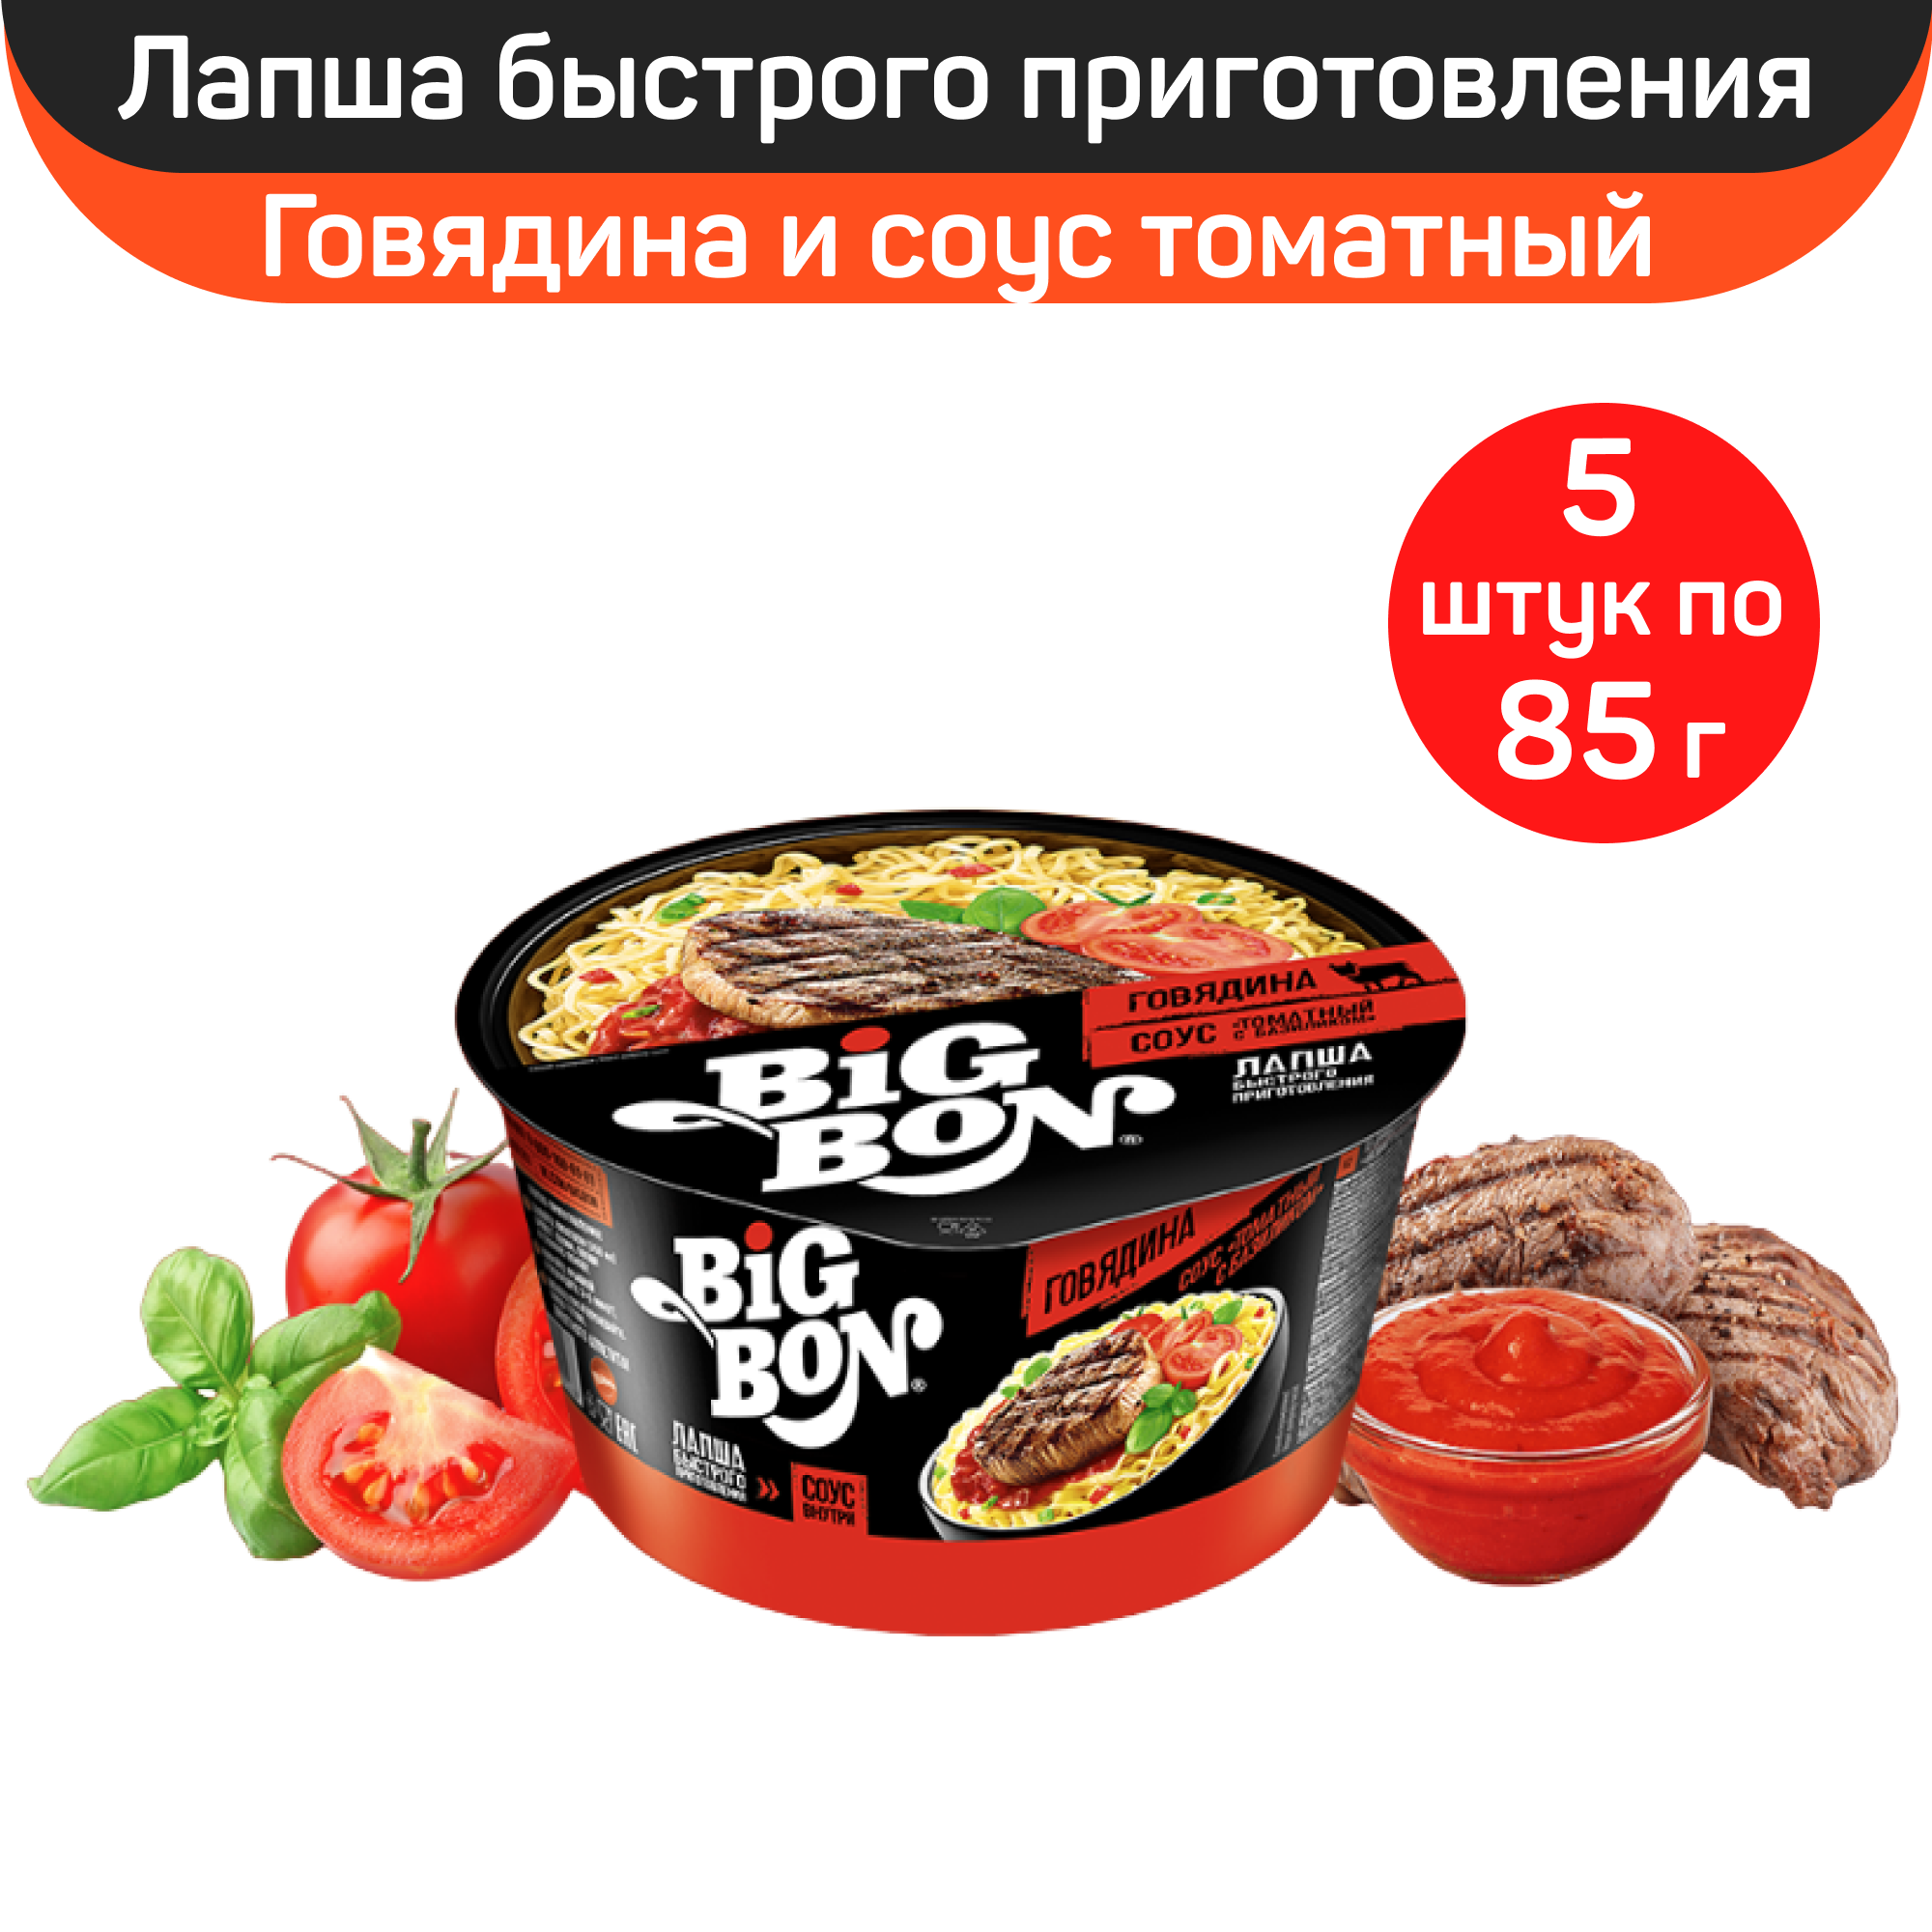 Лапша BigBon говядина и соус томатный с базиликом, 5 шт по 85 г